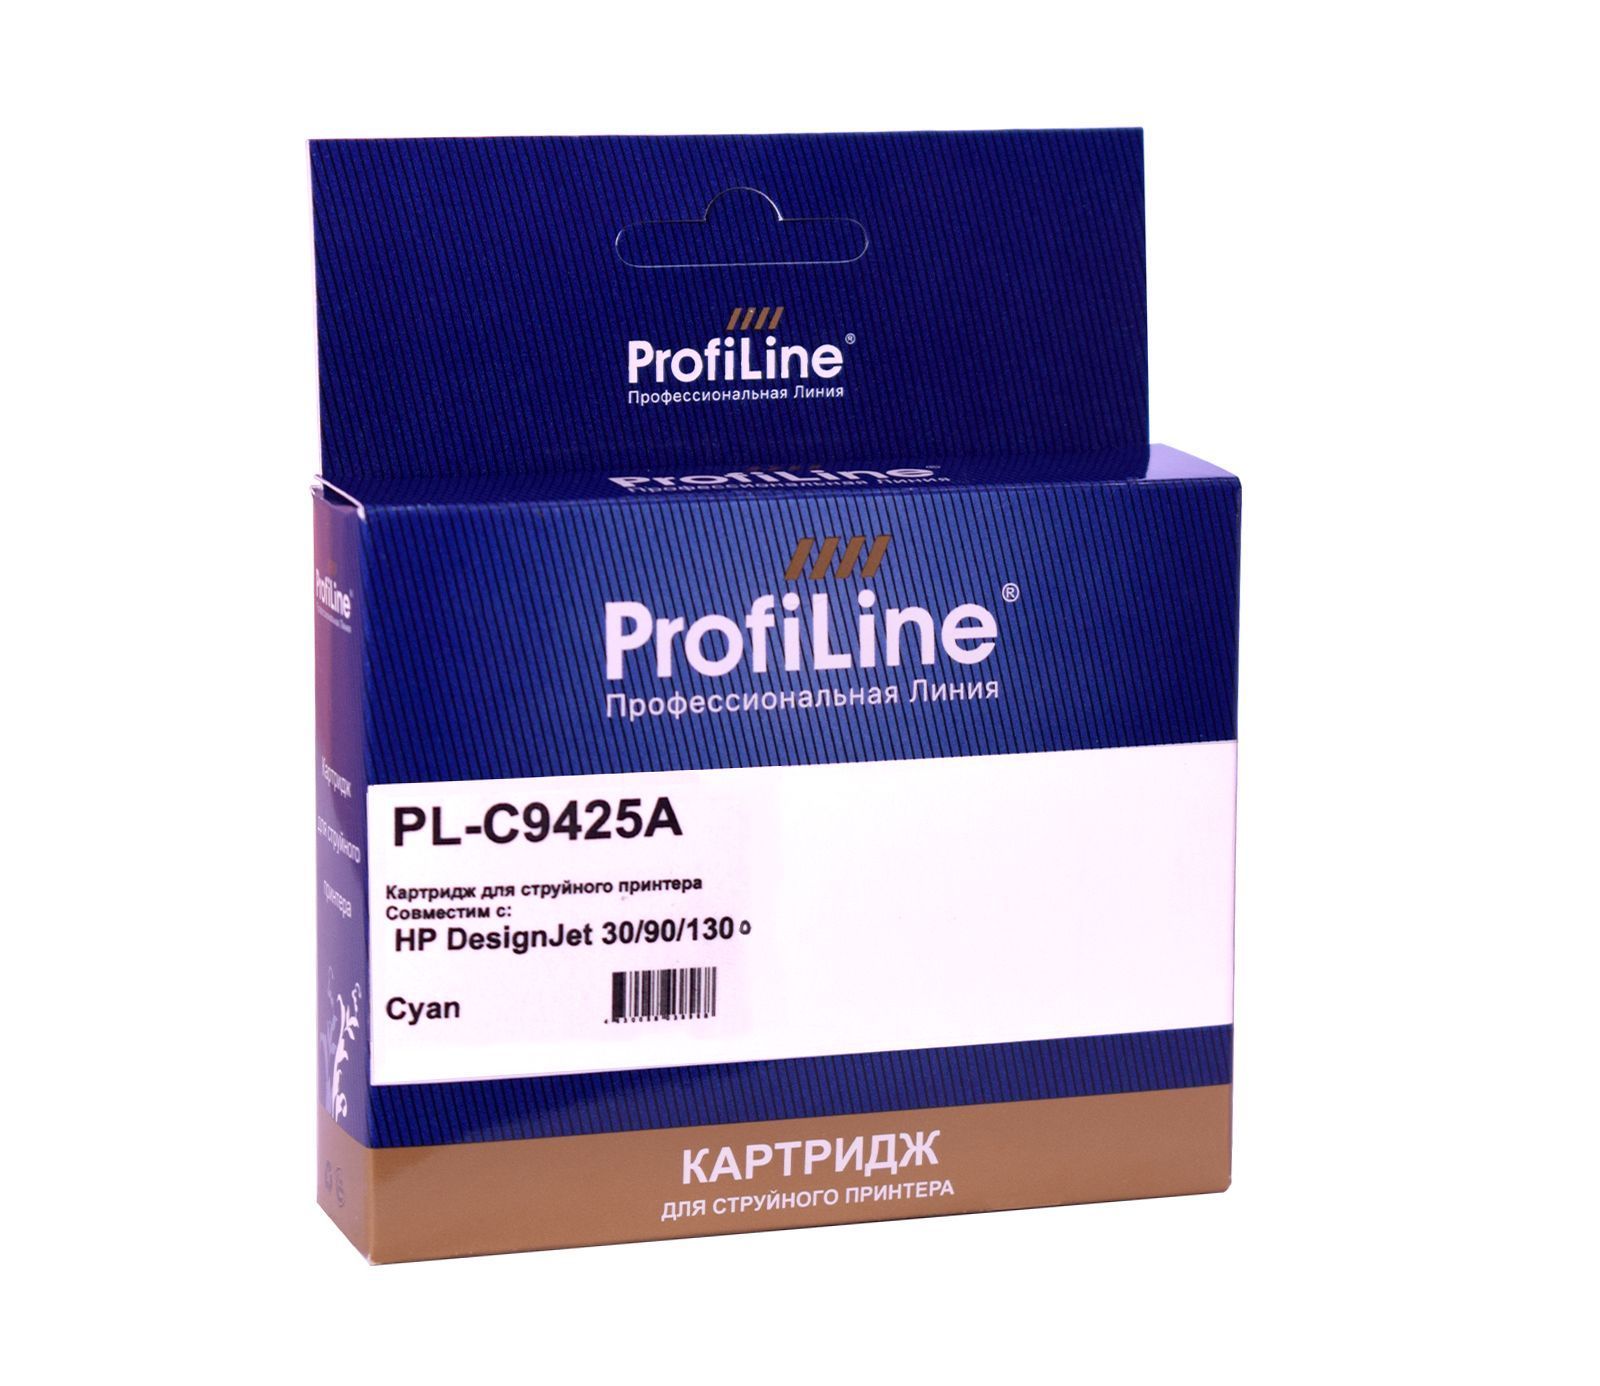 Струйный картридж PL-C9425A (№85) для принтеров HP DesignJet 30/90/130 Cyan 28 мл ProfiLine